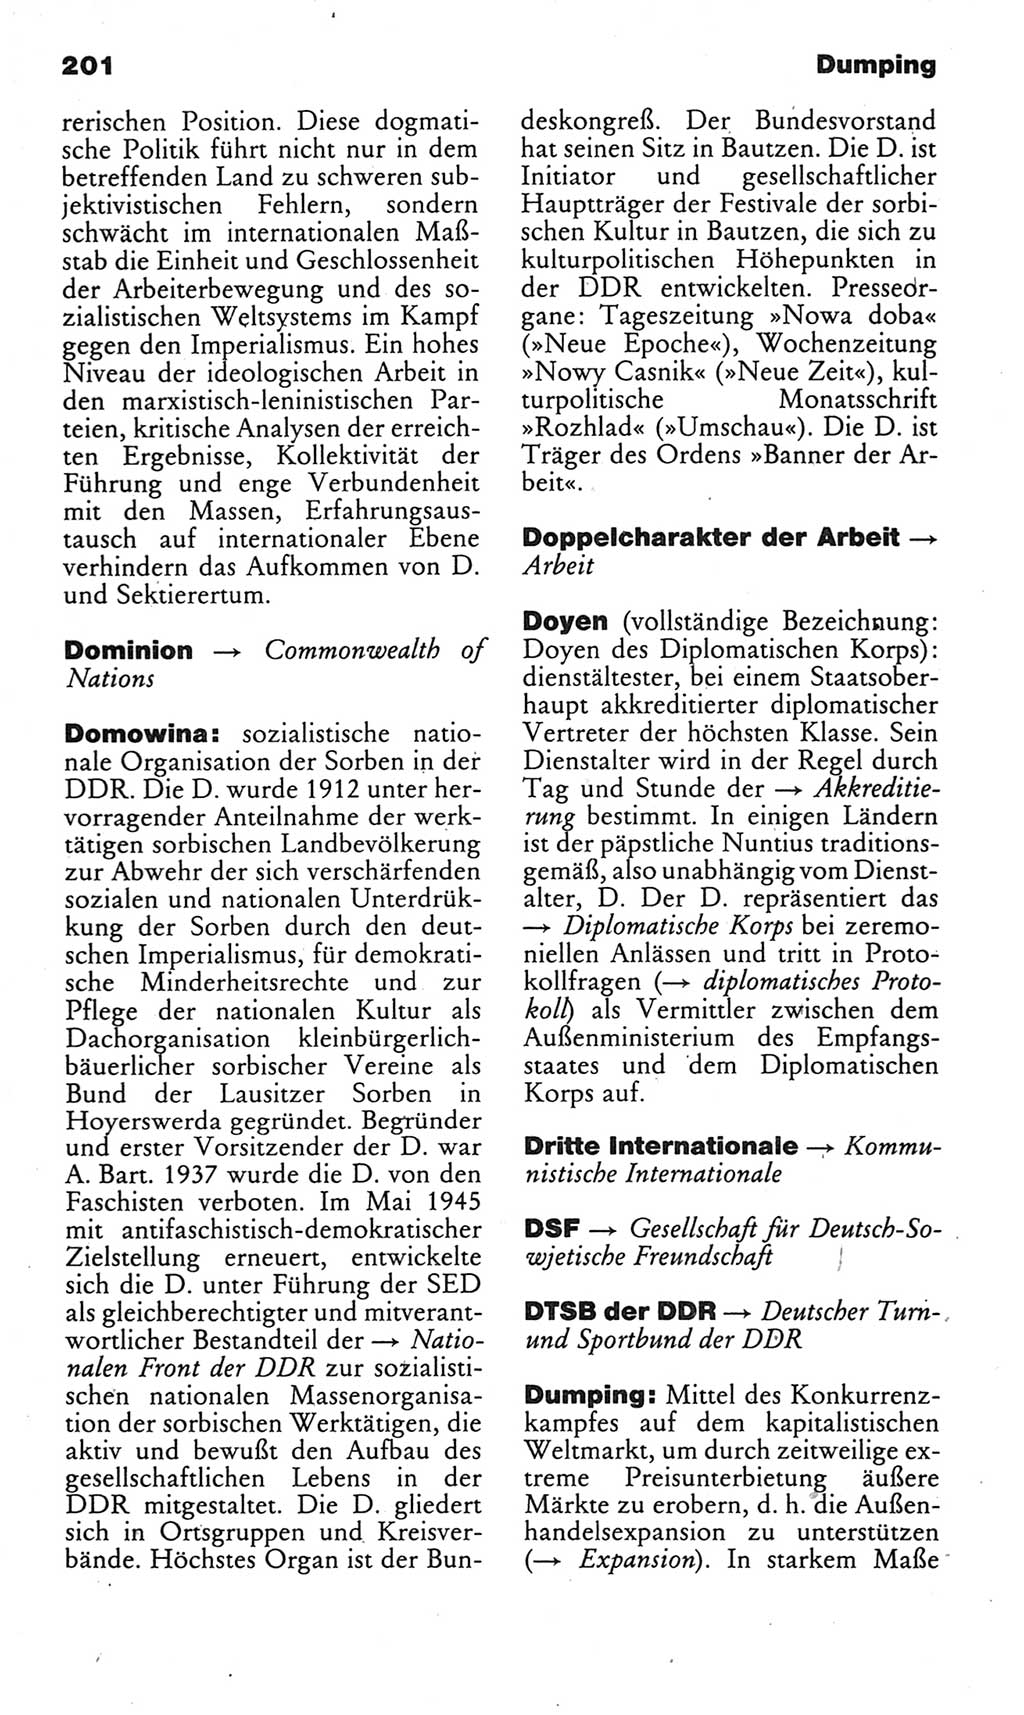 Kleines politisches Wörterbuch [Deutsche Demokratische Republik (DDR)] 1985, Seite 201 (Kl. pol. Wb. DDR 1985, S. 201)